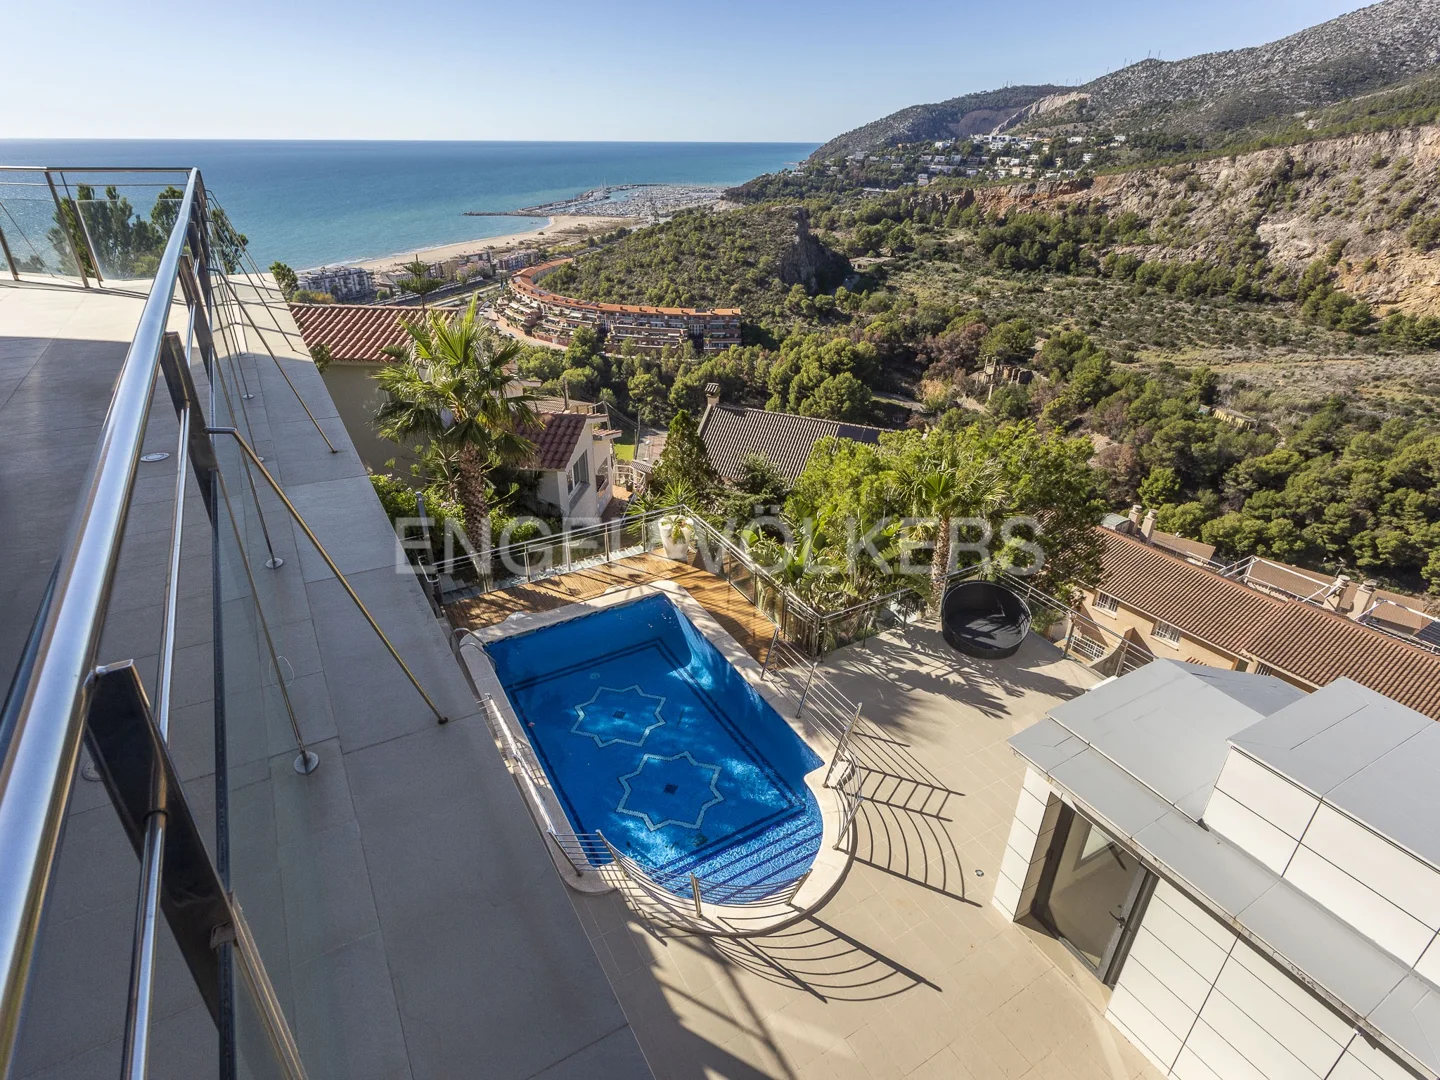 Mediterranean Oasis: An Exquisite Villa with Stunning Views